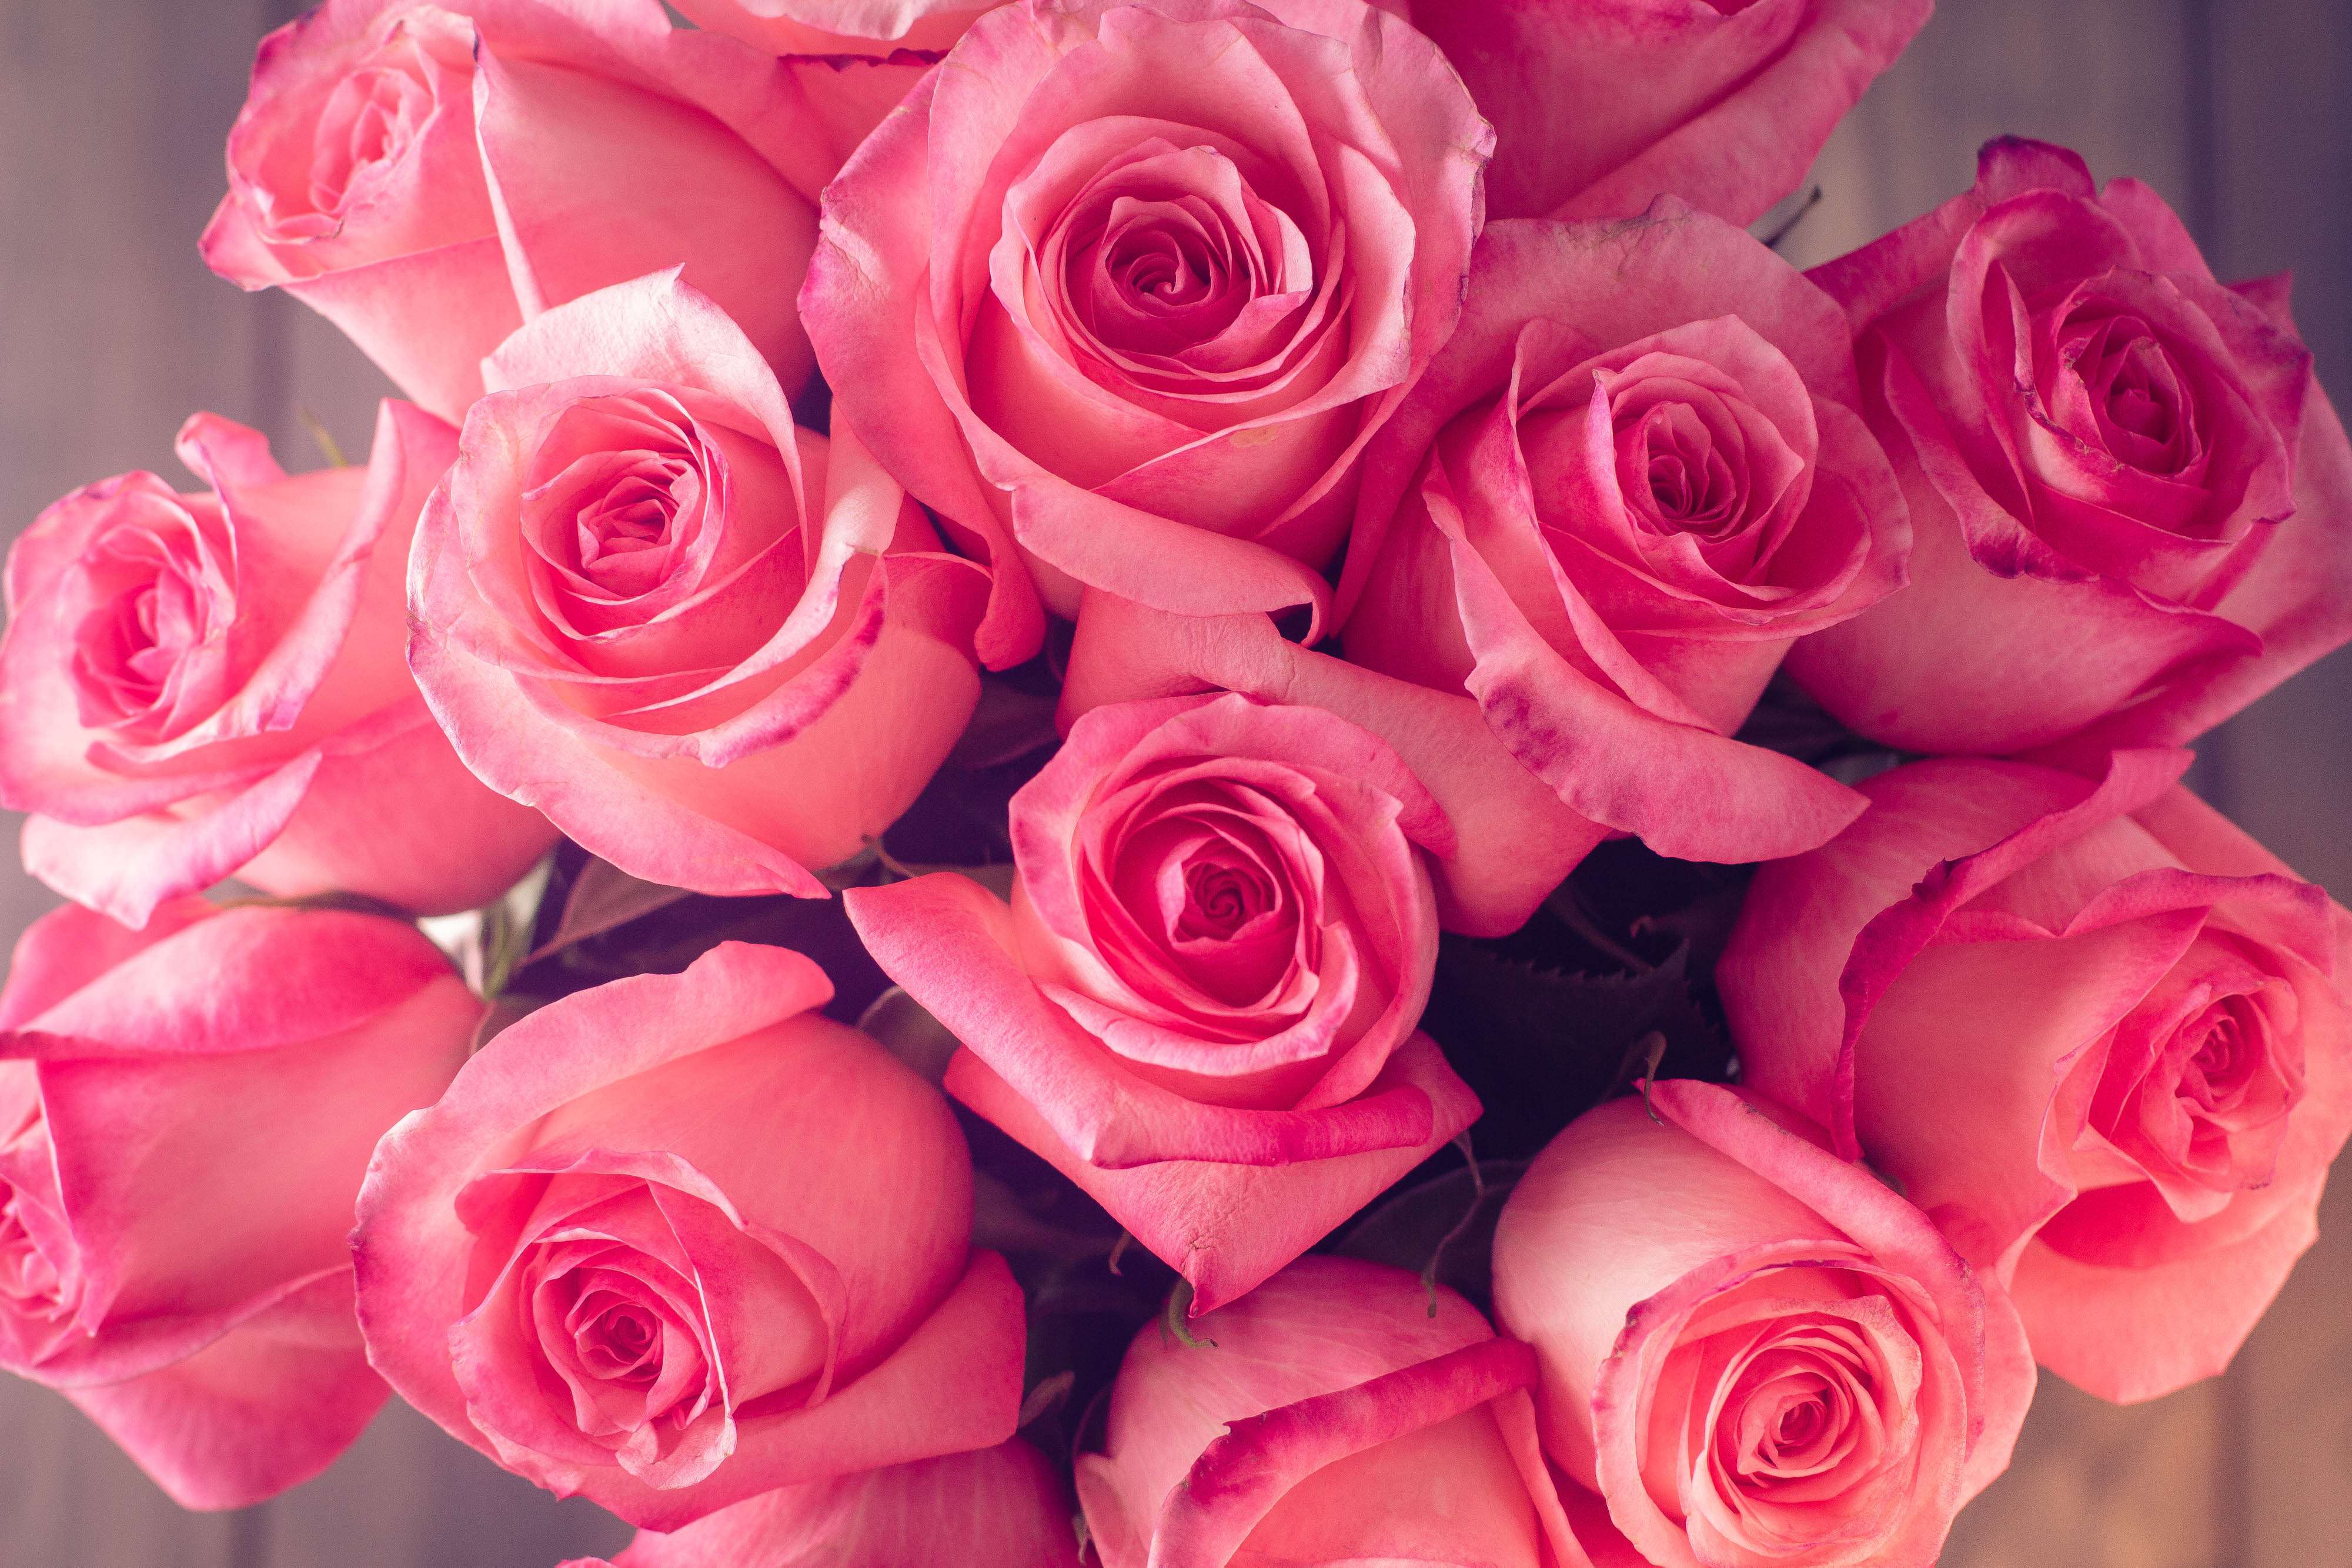 Фотографии розового цвета. Розовые розы. Розовая коза. Шикарные розовые розы. Красивый букет роз.